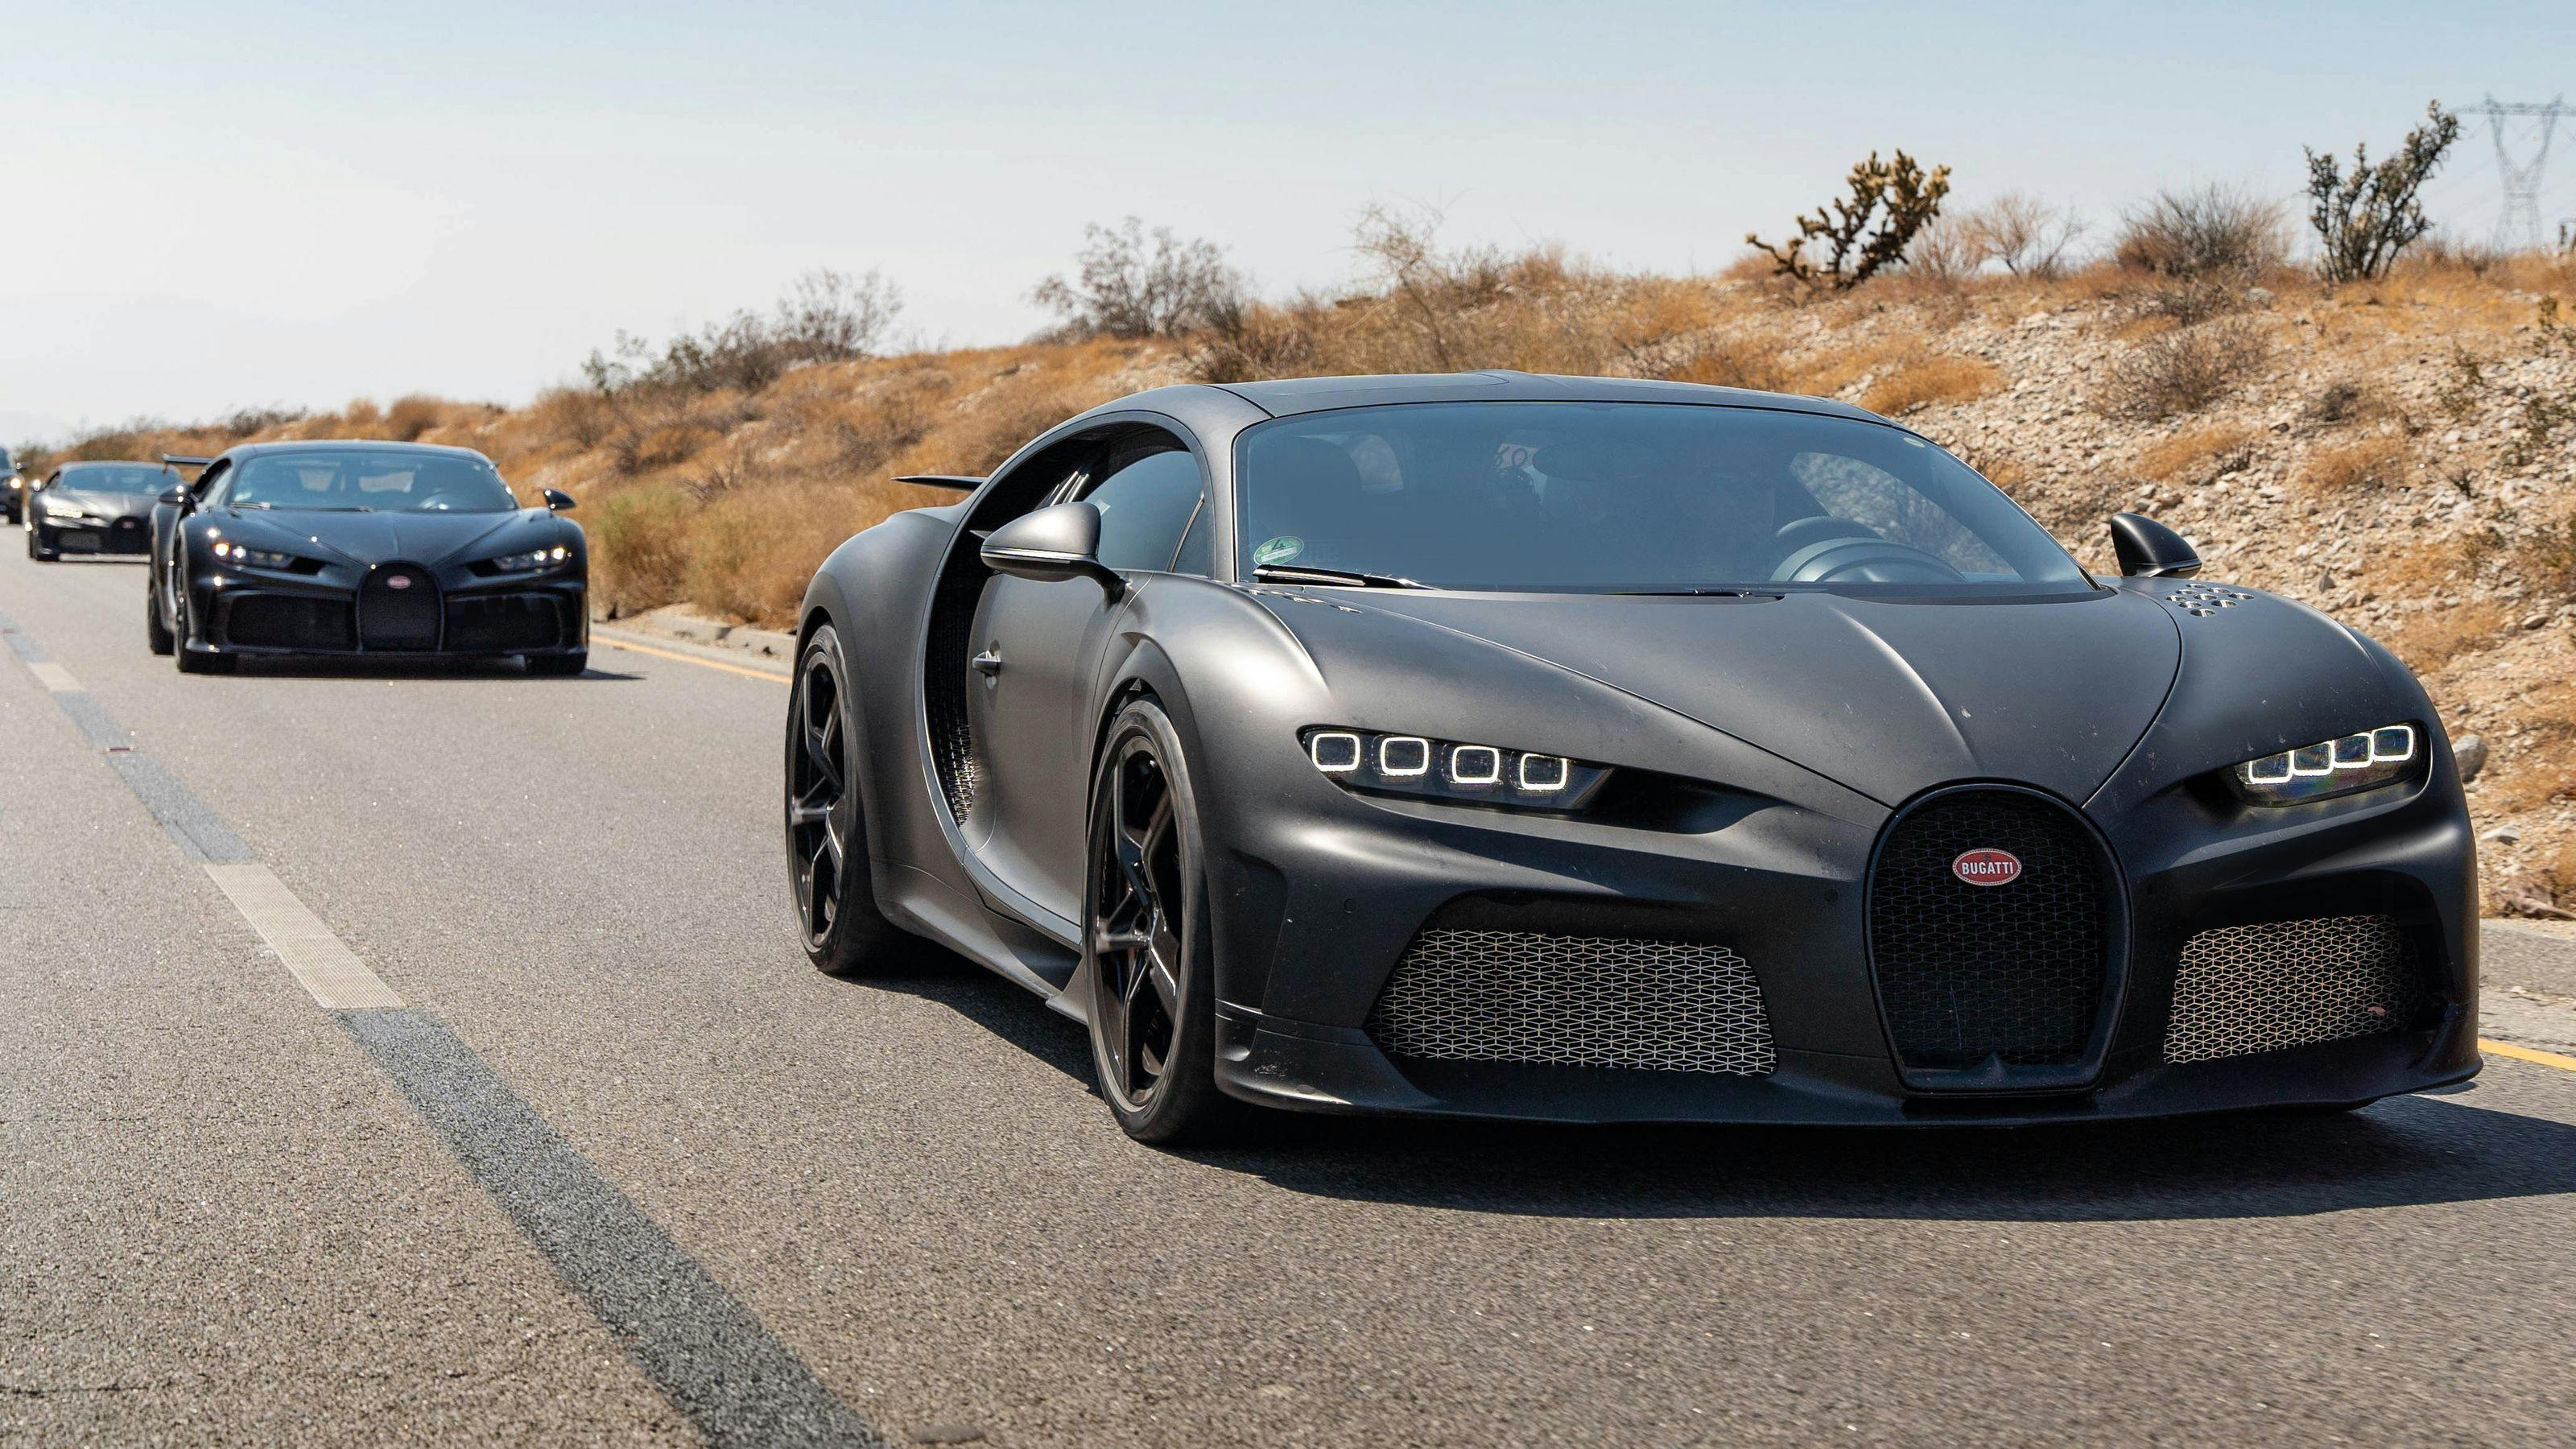 La Bugatti Centodieci passe aisément les tests de chaleurs extrêmes de plus de 45°C